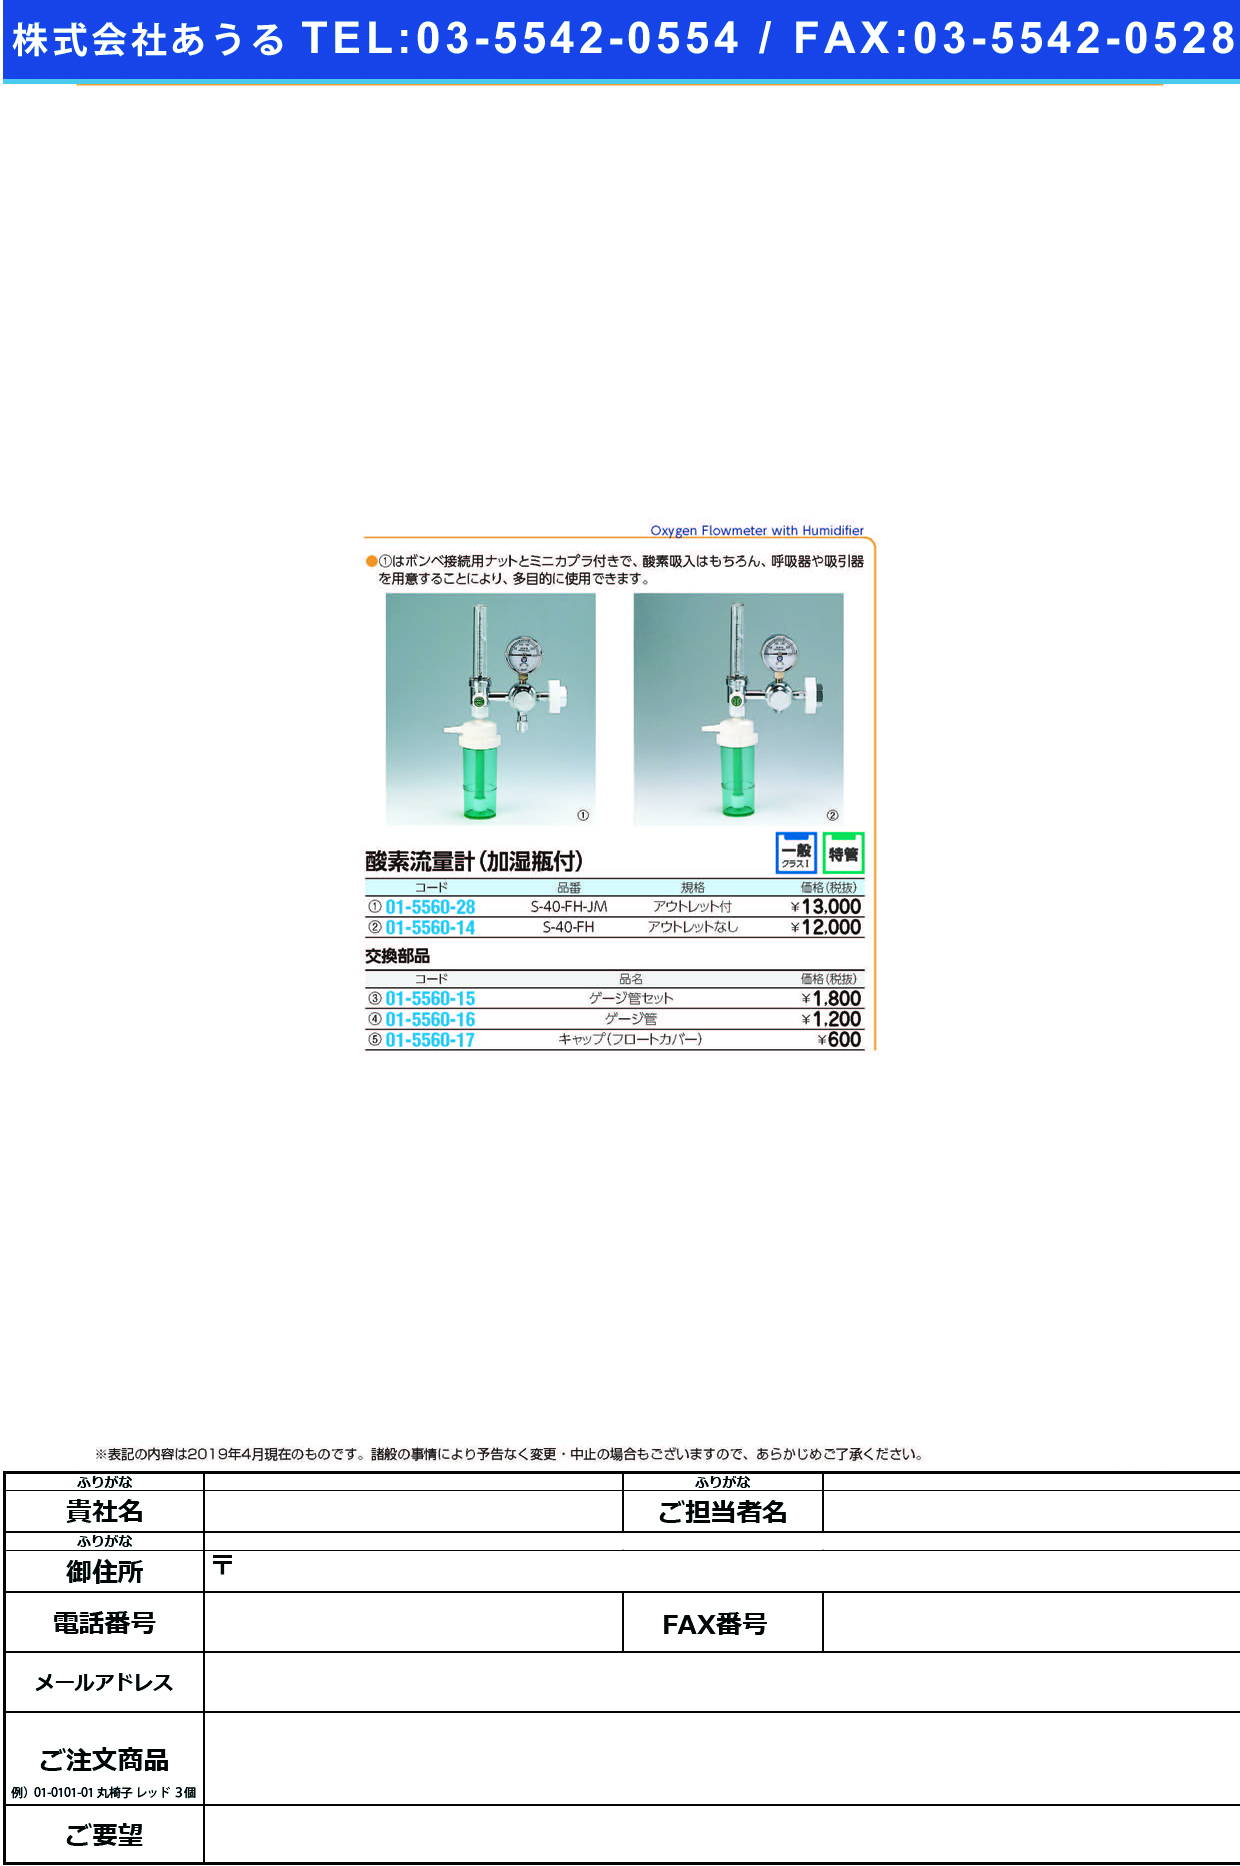 (01-5560-28)酸素流量計（加湿瓶付）多目的型 S-40-FH-JM ｻﾝｿﾘｭｳﾘｮｳｹｲﾀﾓｸﾃｷｶﾞﾀ(ブルークロス・エマージェンシー)【1組単位】【2019年カタログ商品】